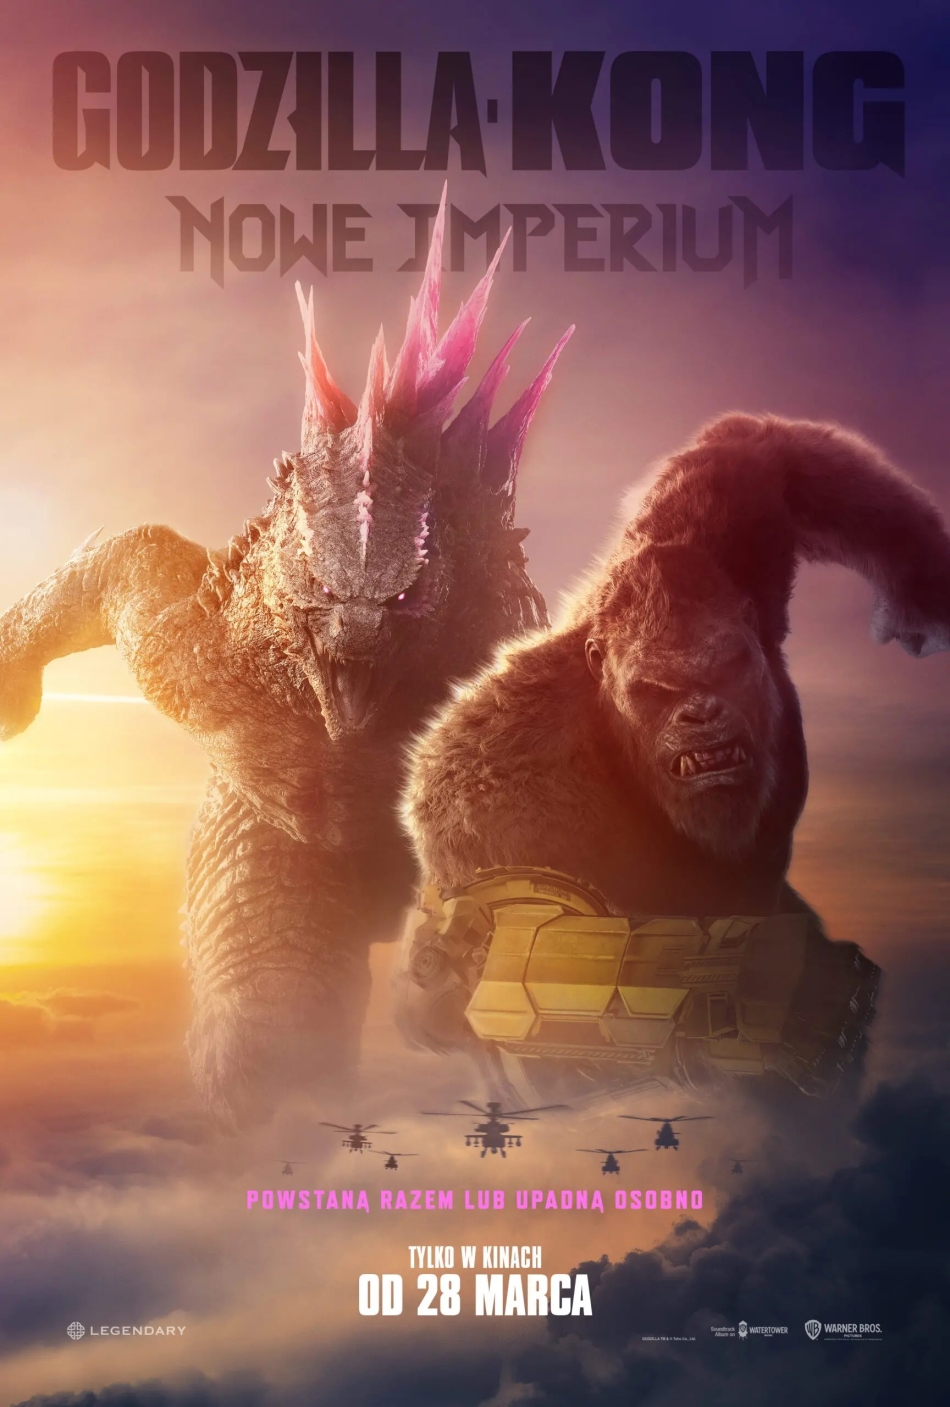 "Godzilla i Kong: Nowe Imperium" (RÓŻNE WERSJE)